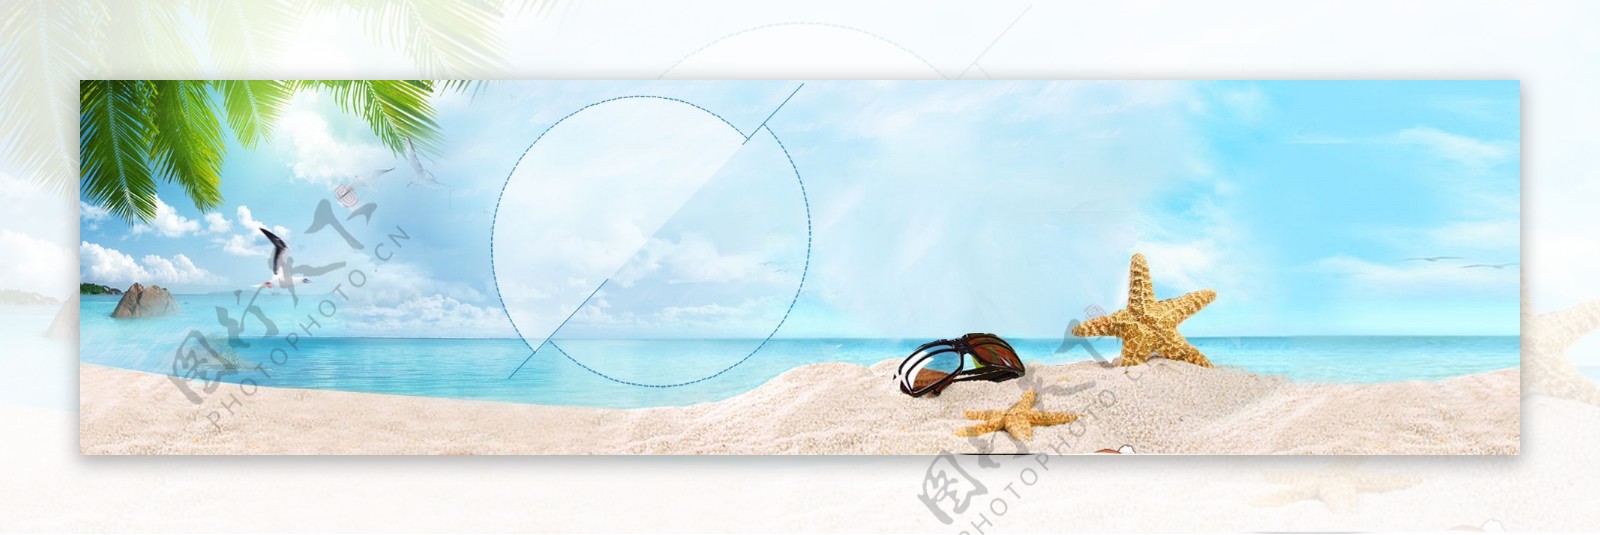 蓝色创意海洋沙滩淘宝背景图片